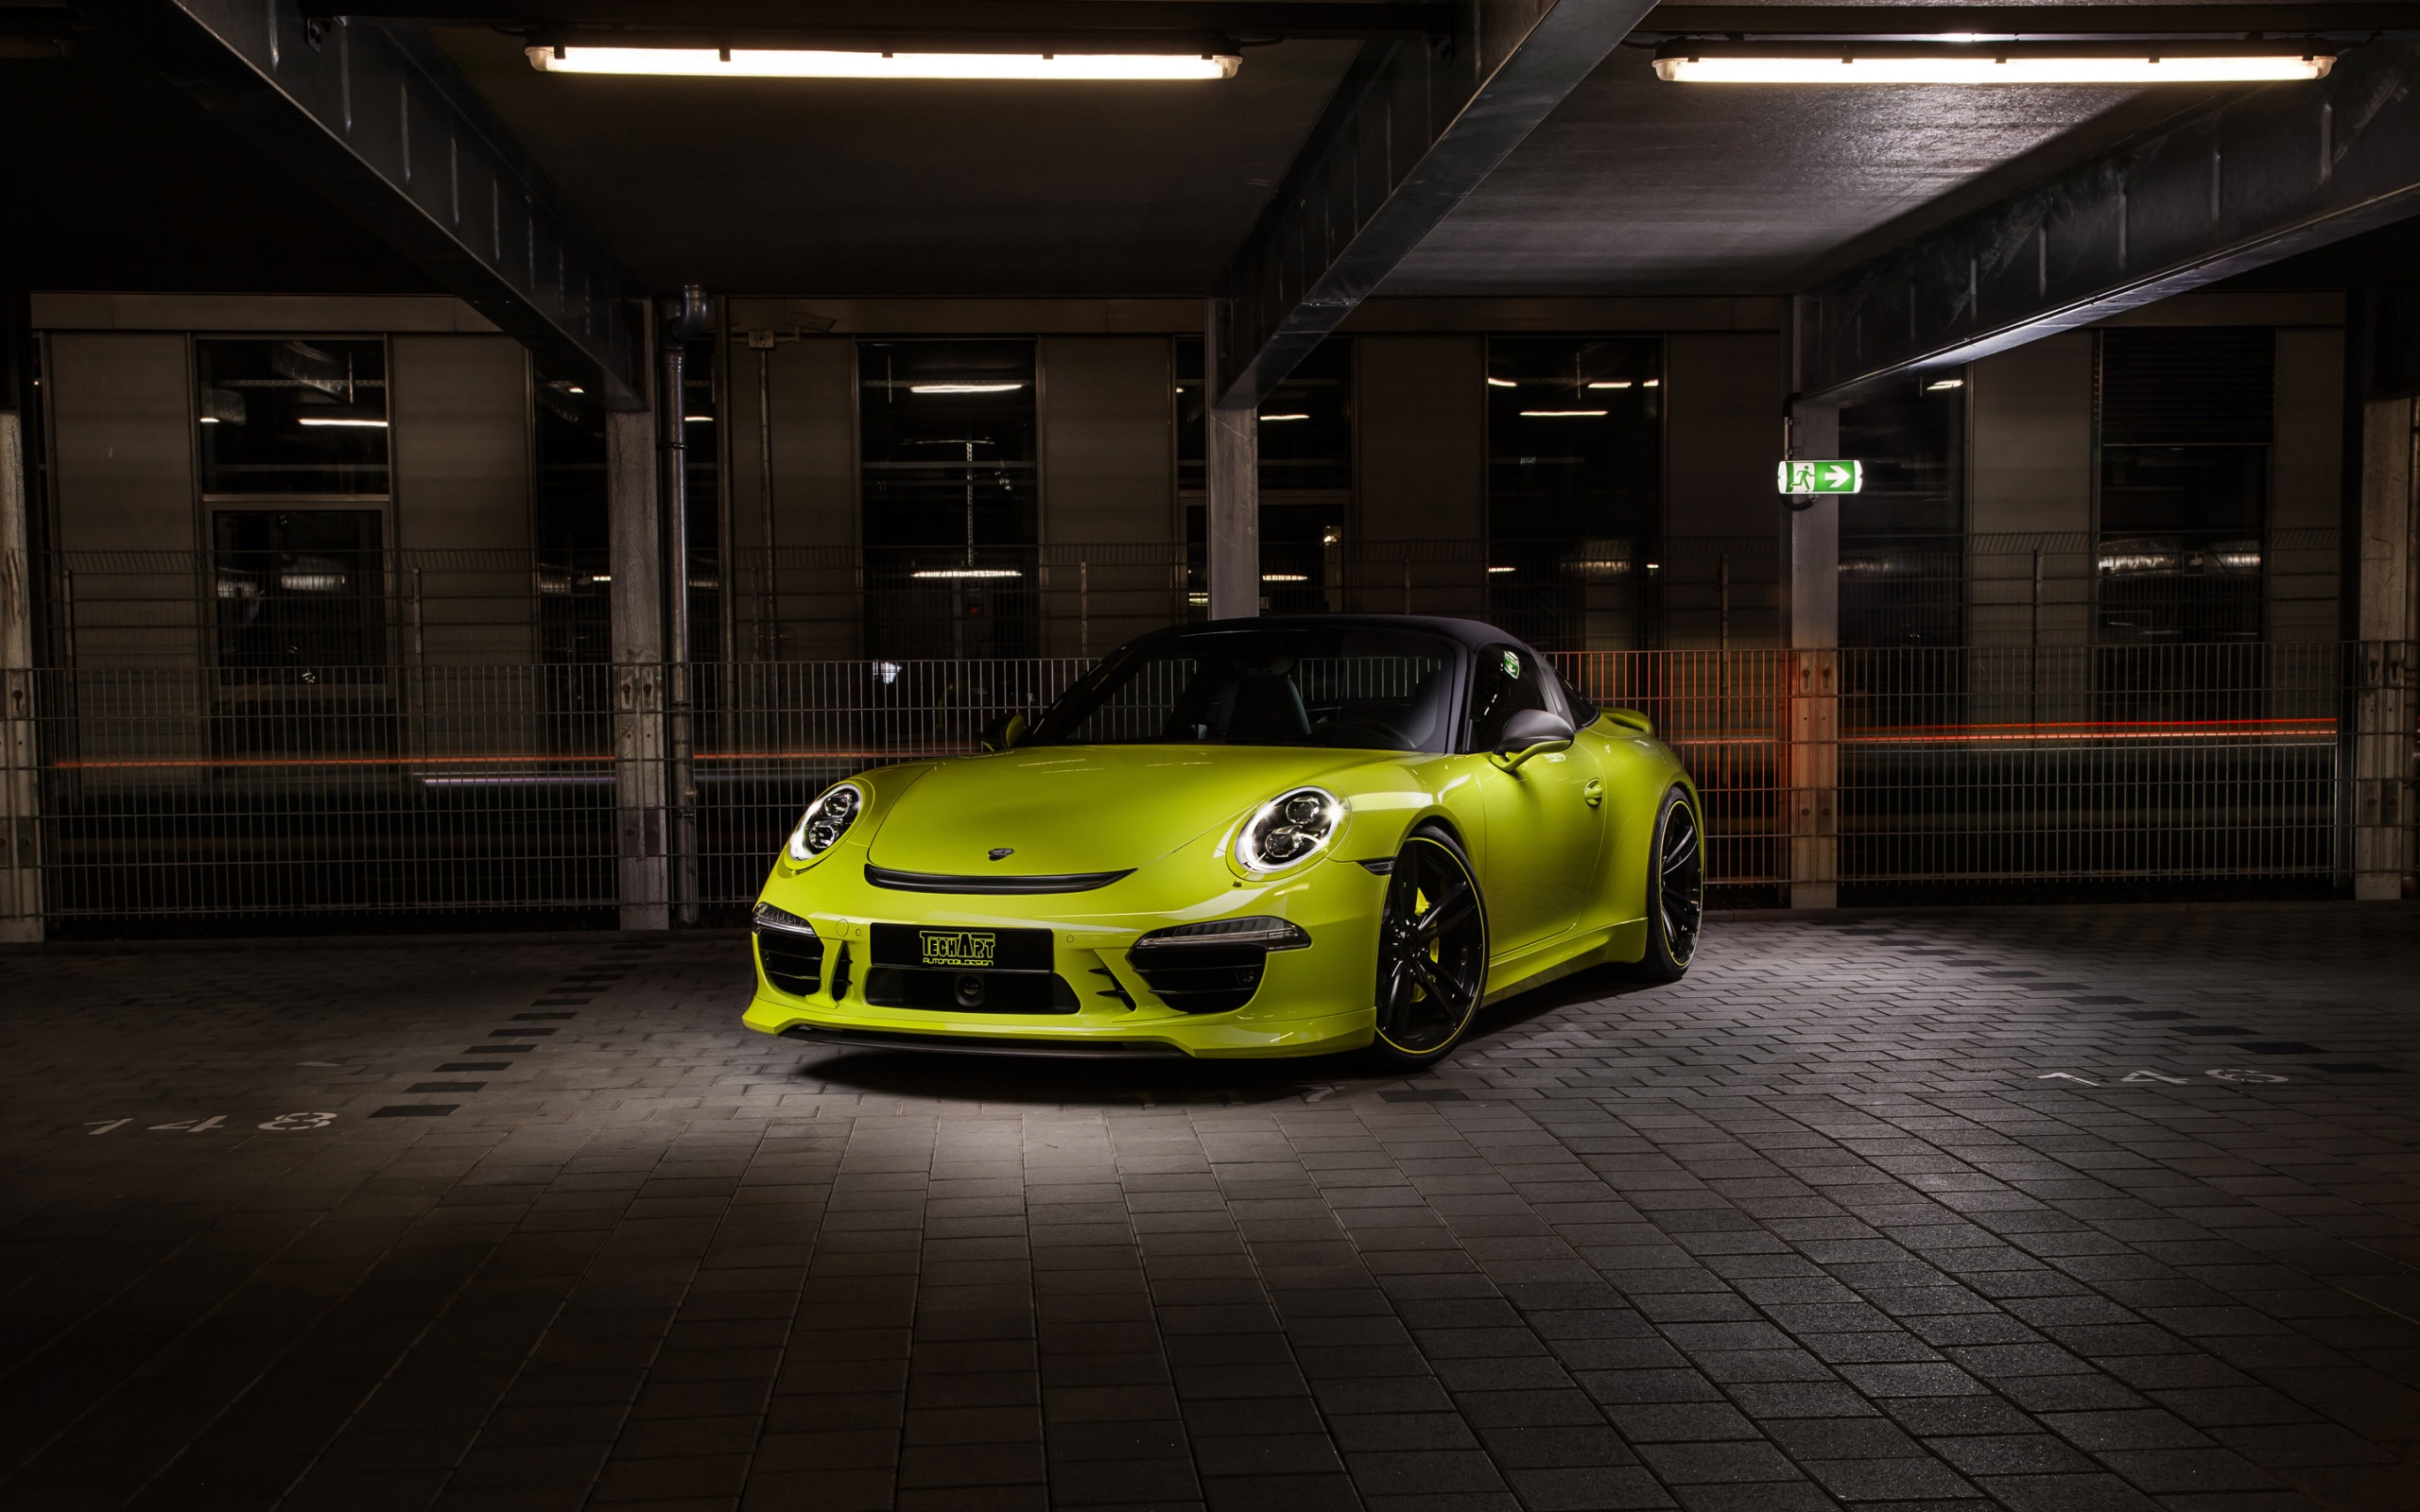 Descarga gratuita de fondo de pantalla para móvil de Vehículos, Porsche 911 Targa.